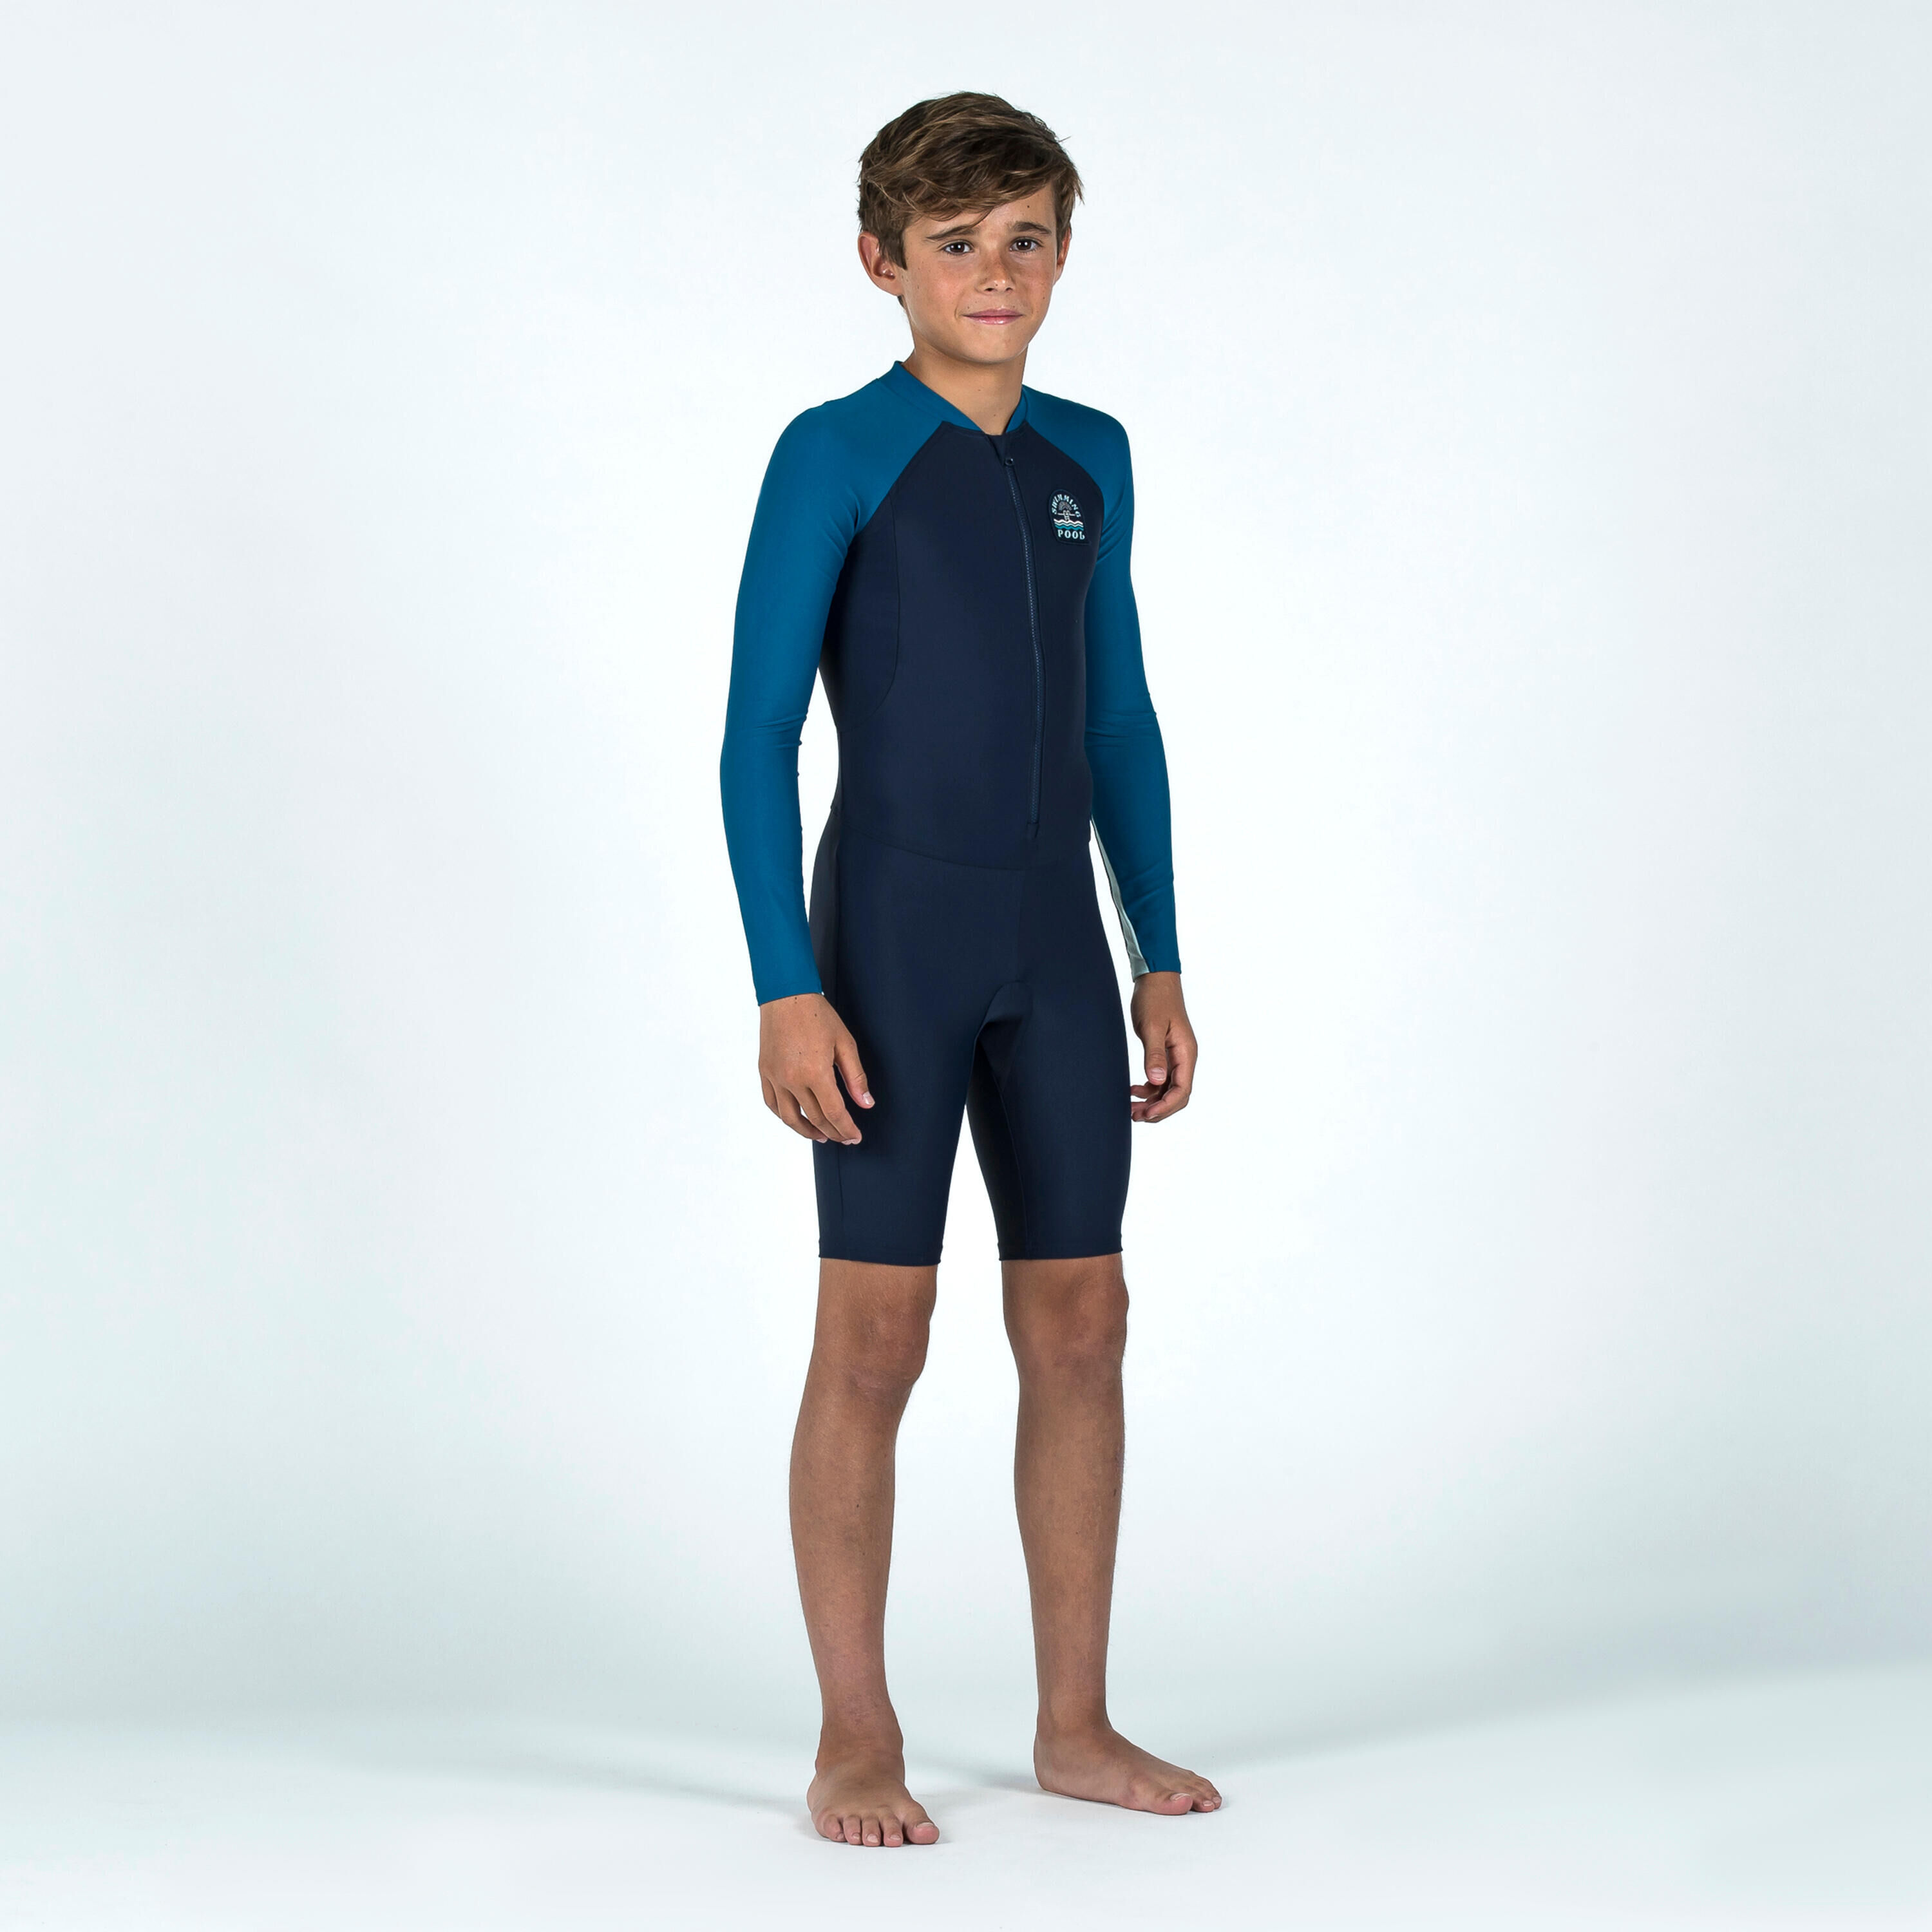 NABAIJI Boys' Wetsuit - Shorty 100 Long-Sleeved - Two-tone Blue